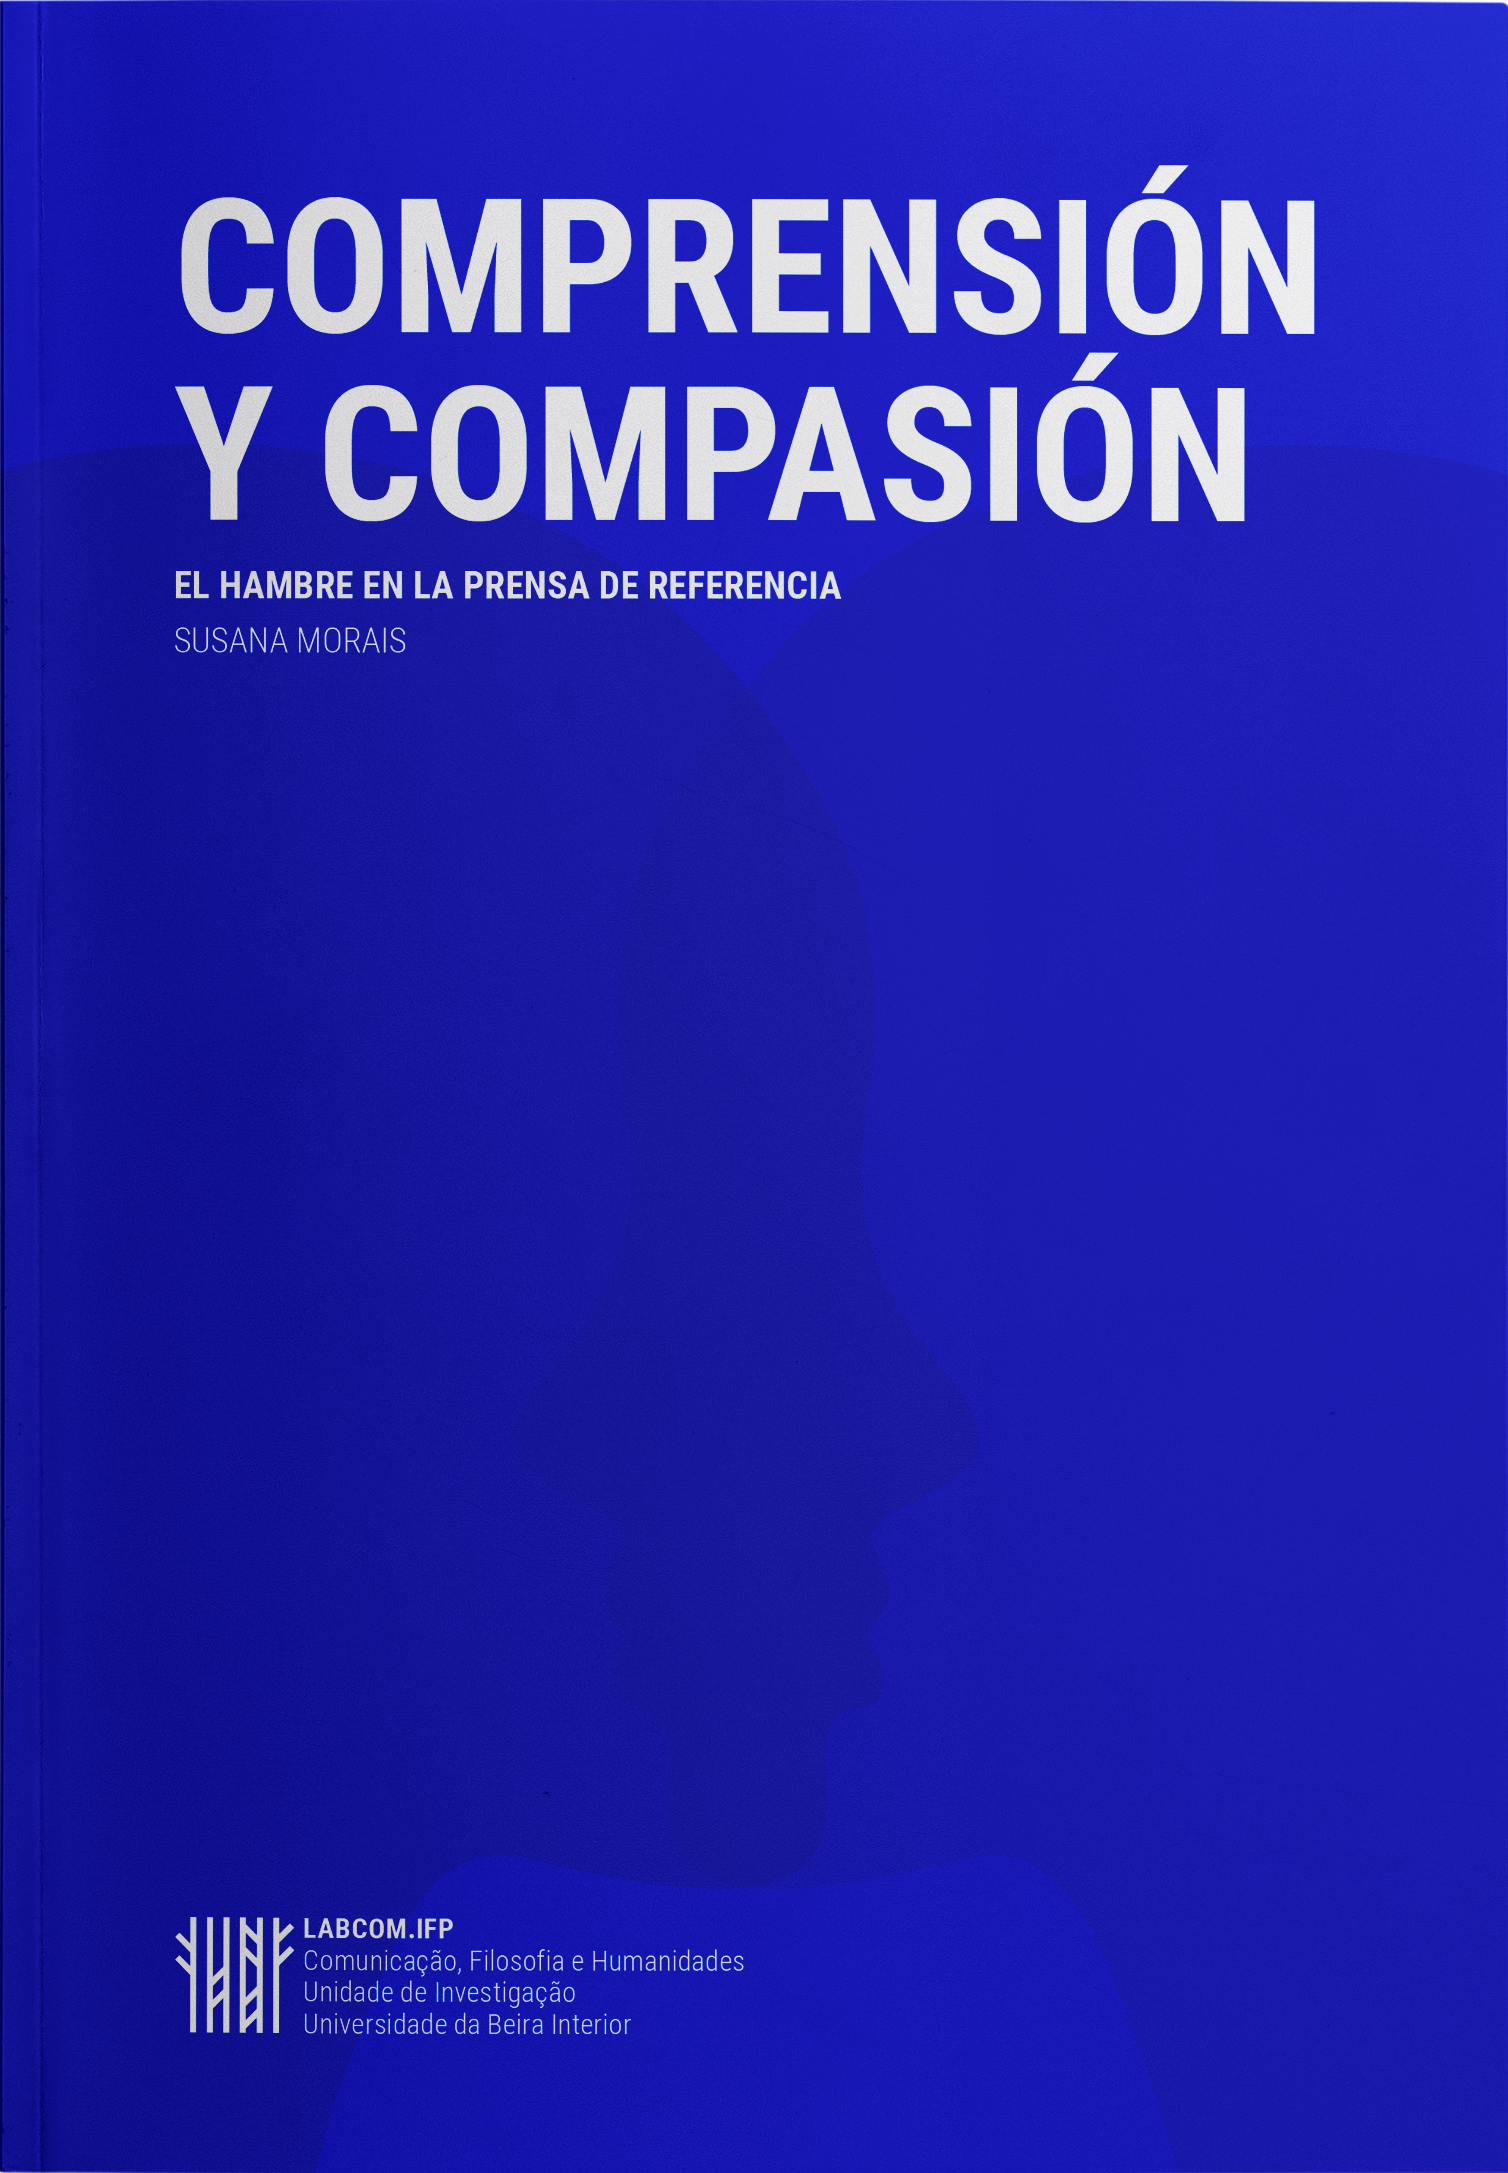 Capa: Susana Morais (2019) Comprensión y Compasión: El hambre en la prensa de referencia. Communication  +  Philosophy  +  Humanities. .